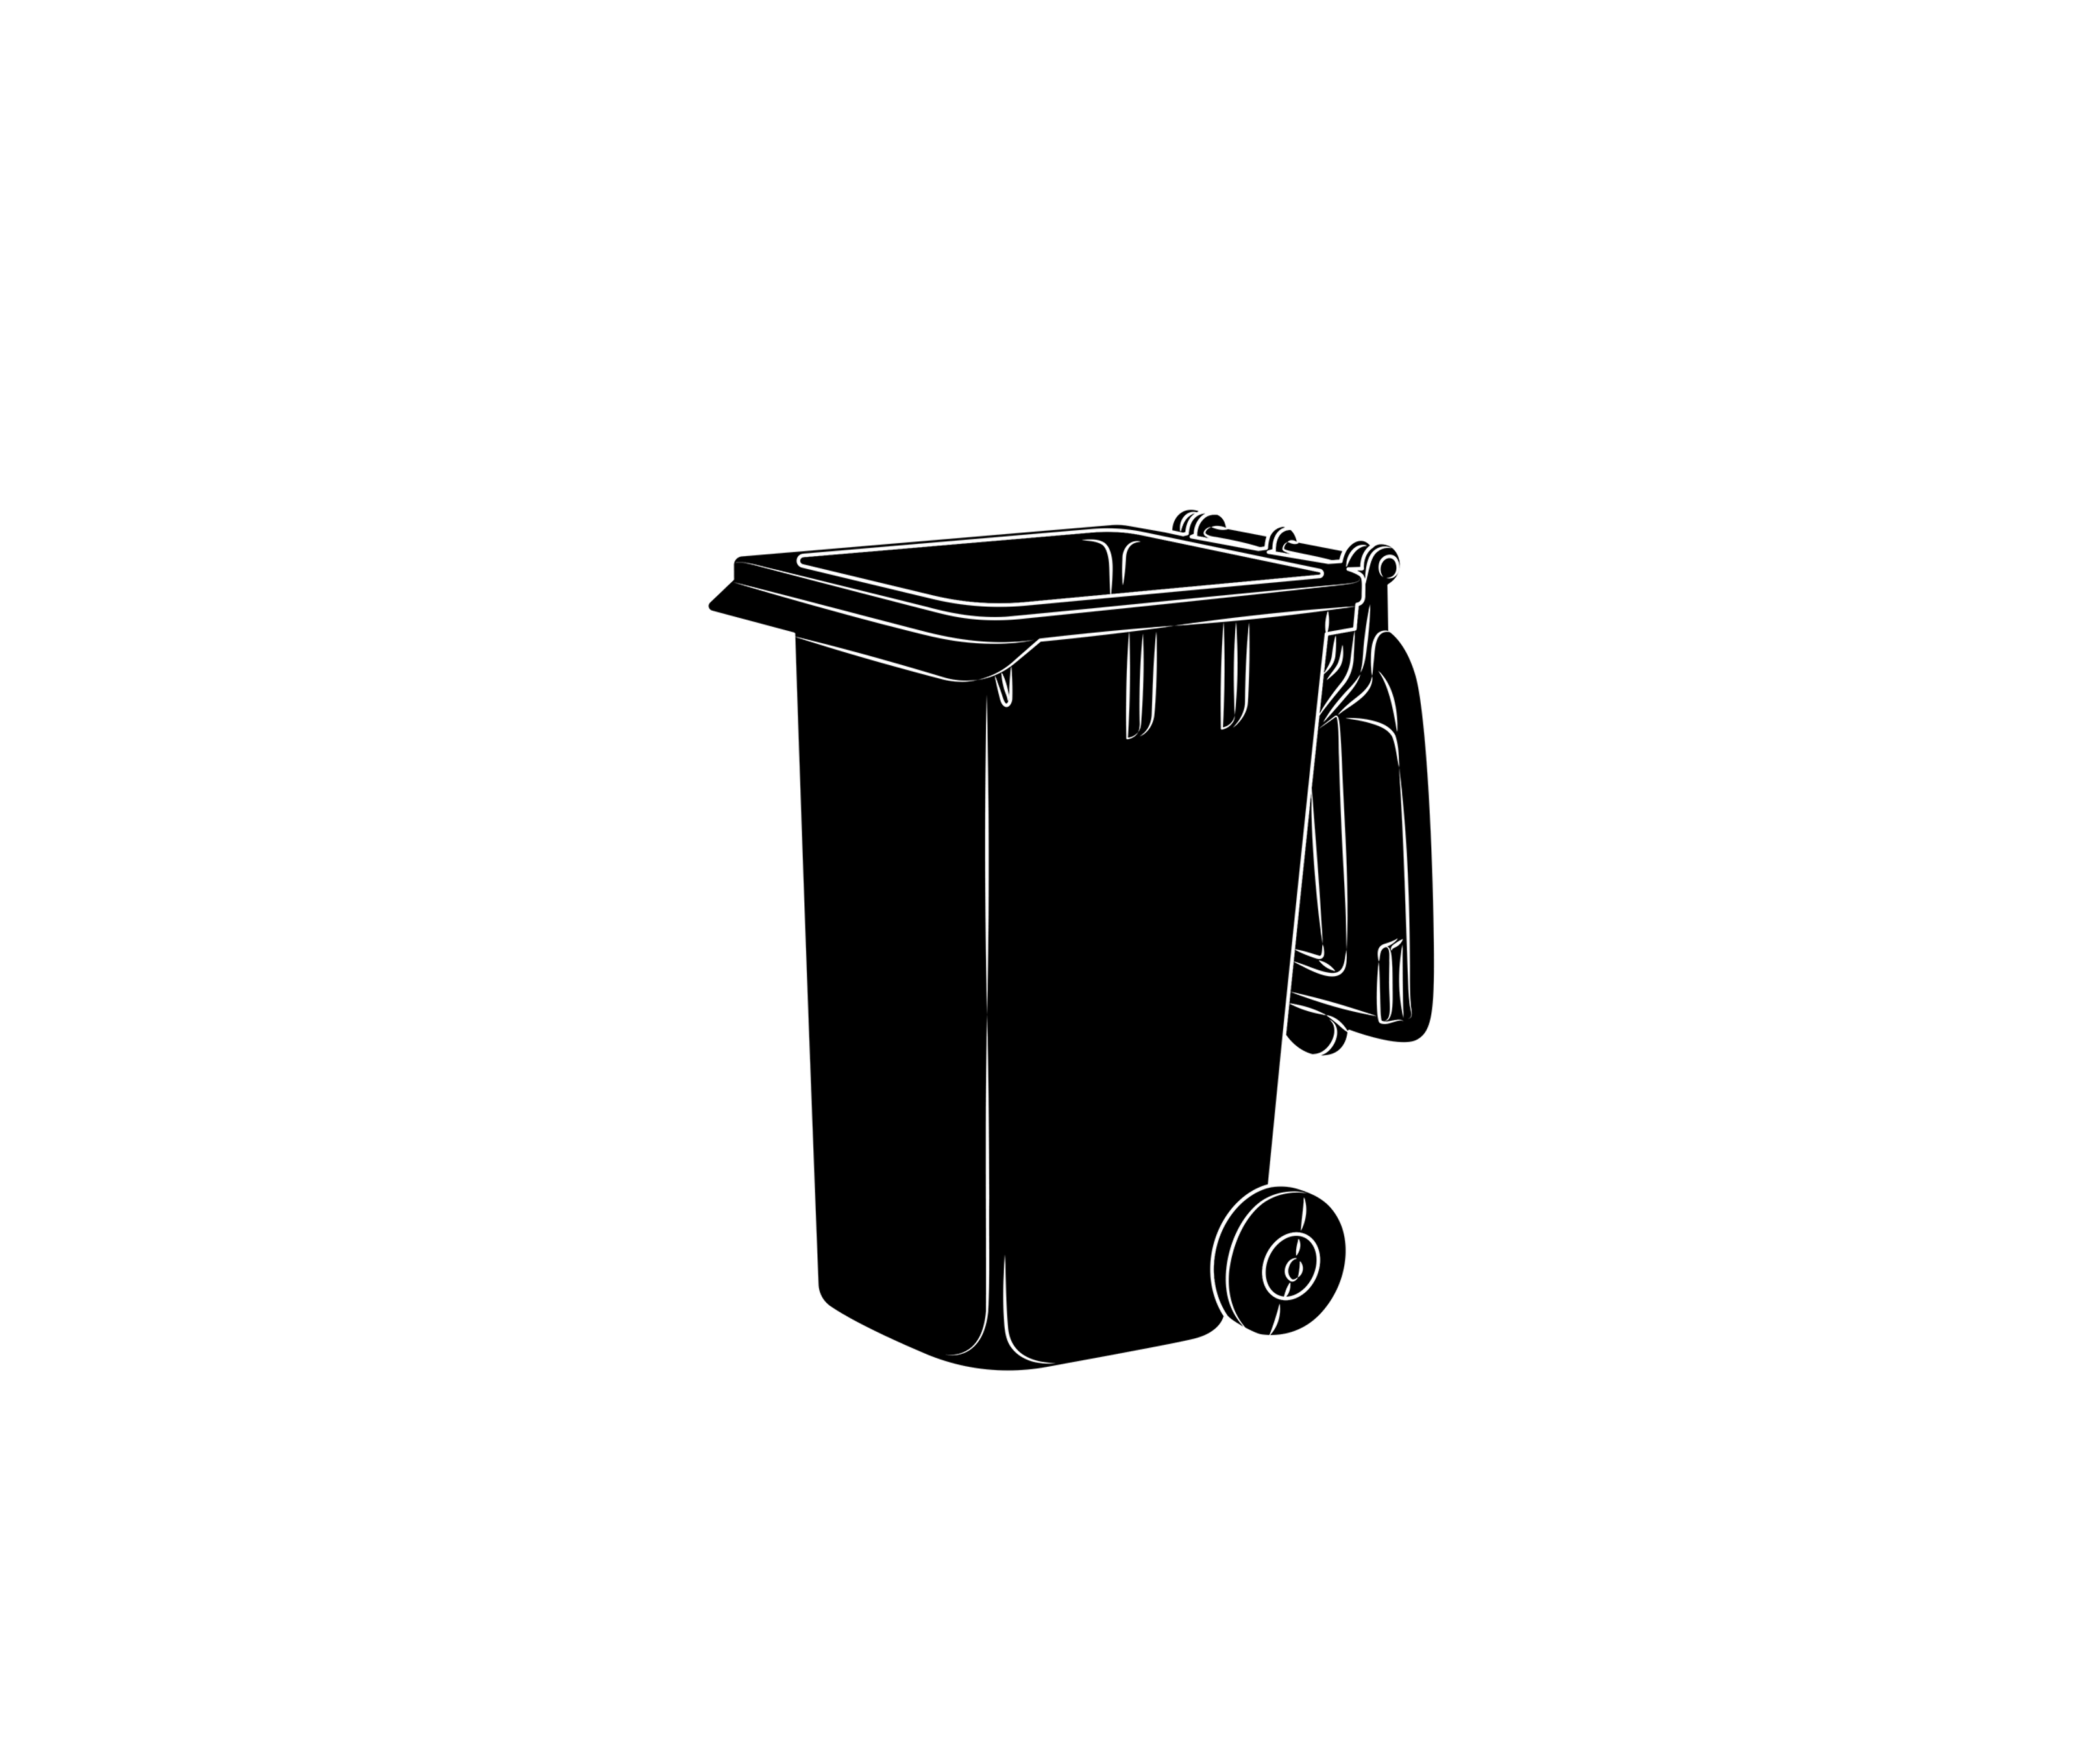 Trash can illustration in black.